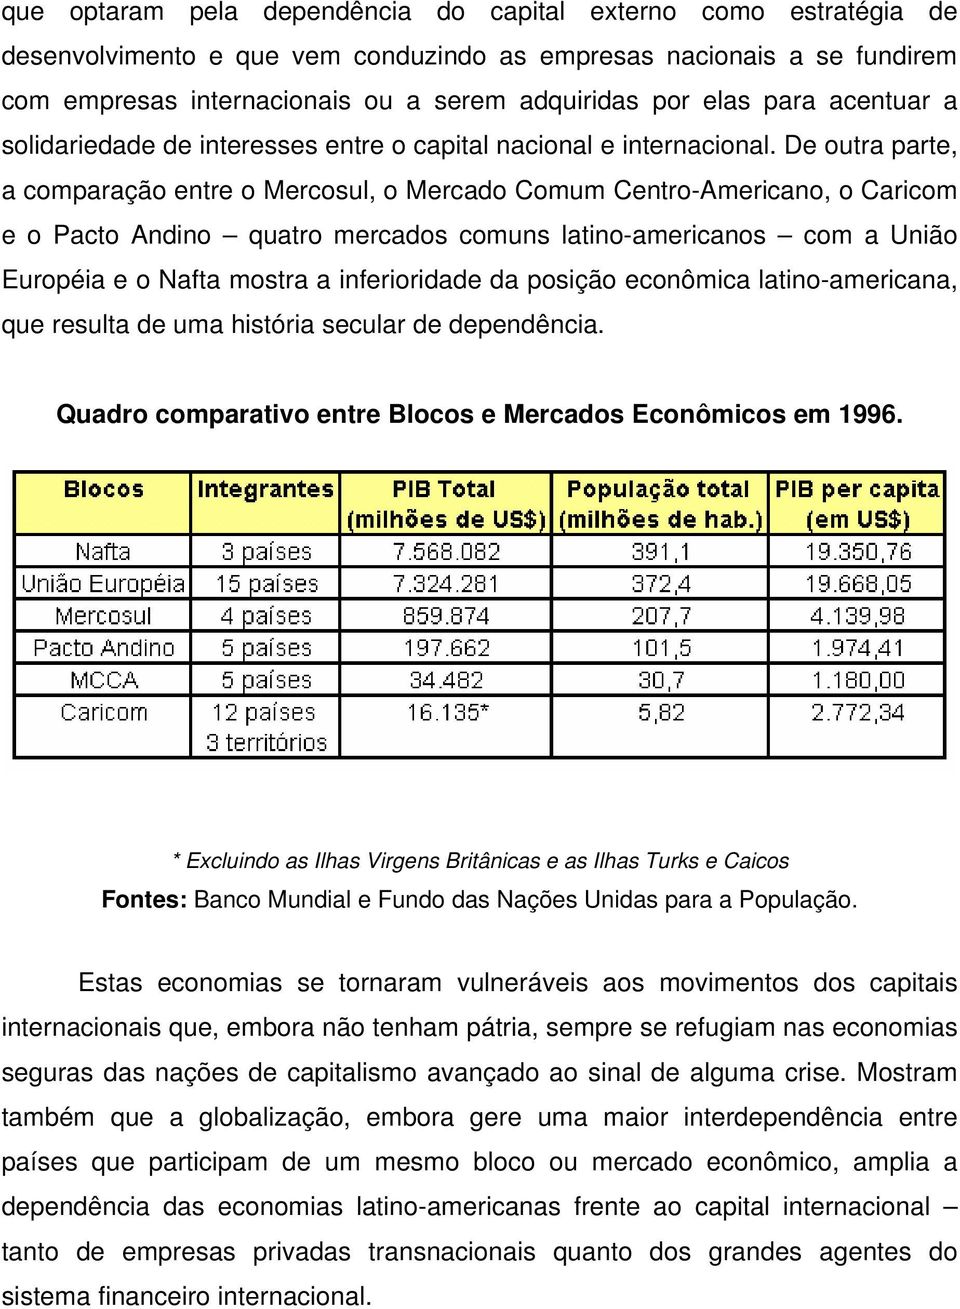 De outra parte, a comparação entre o Mercosul, o Mercado Comum Centro-Americano, o Caricom e o Pacto Andino quatro mercados comuns latino-americanos com a União Européia e o Nafta mostra a